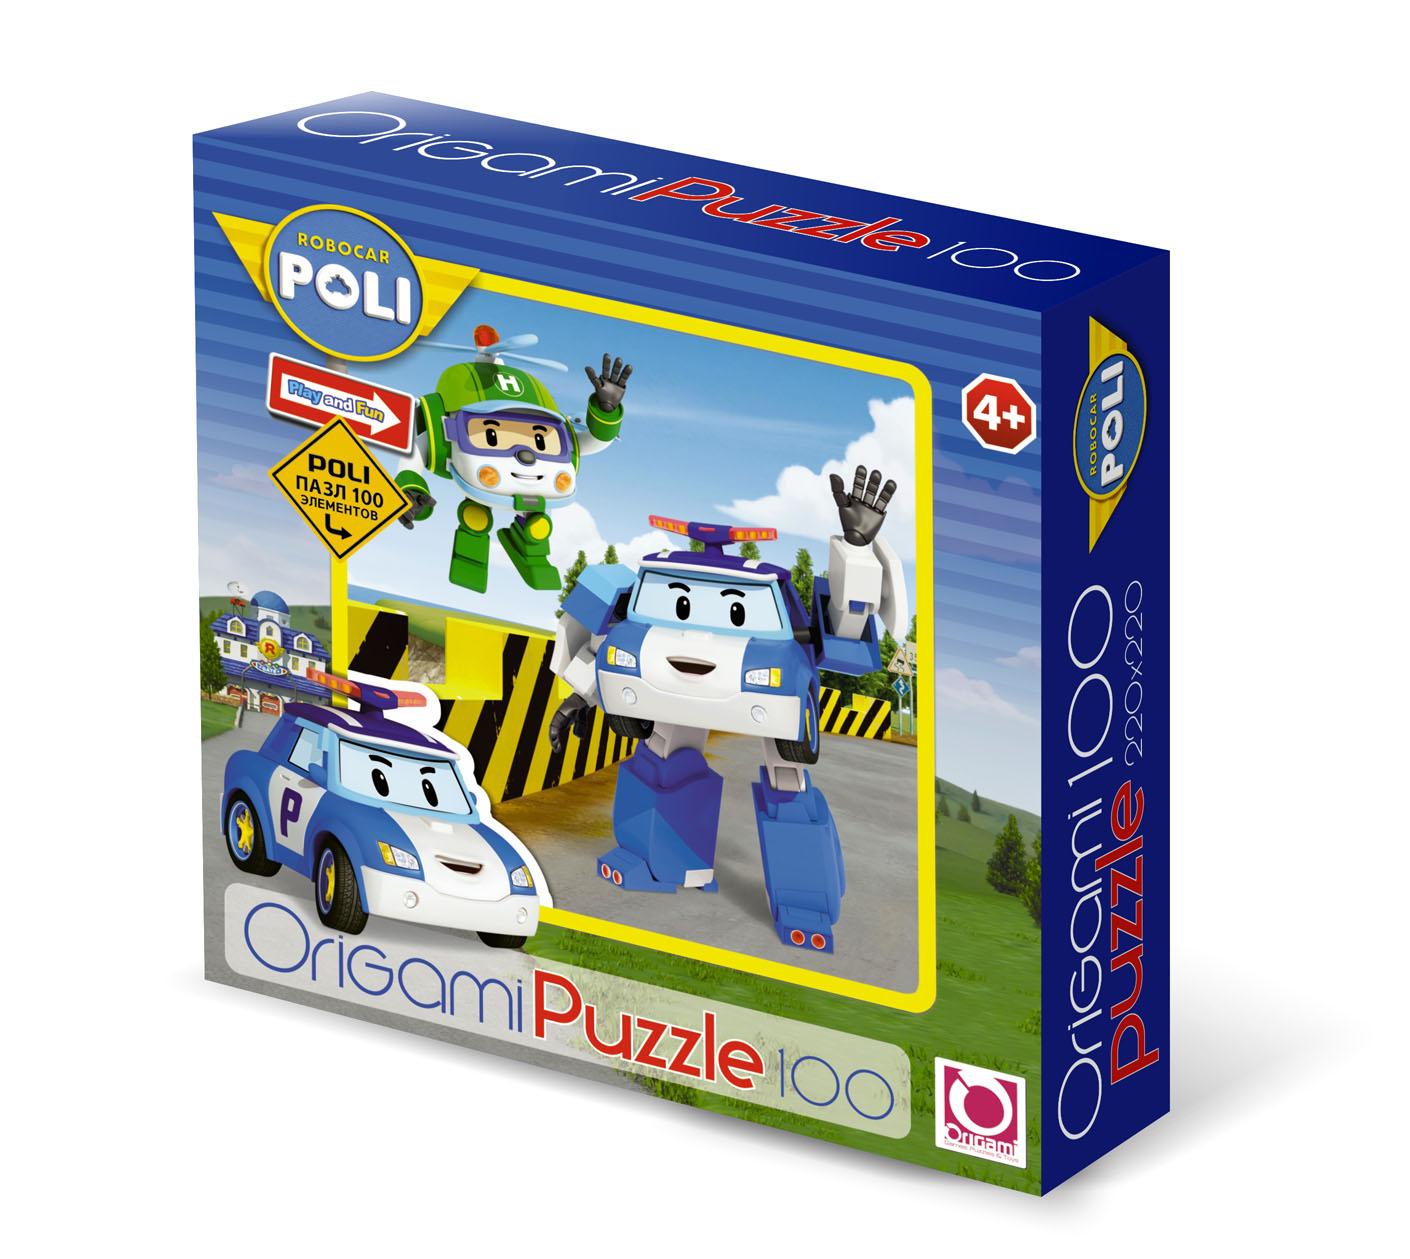 Игрушка поли купить. Робокар Поли. Пазл Origami Robocar Poli (05895), 100 дет.. Пазл по Робокар Поли. Закажи пазл Робокар Поли.